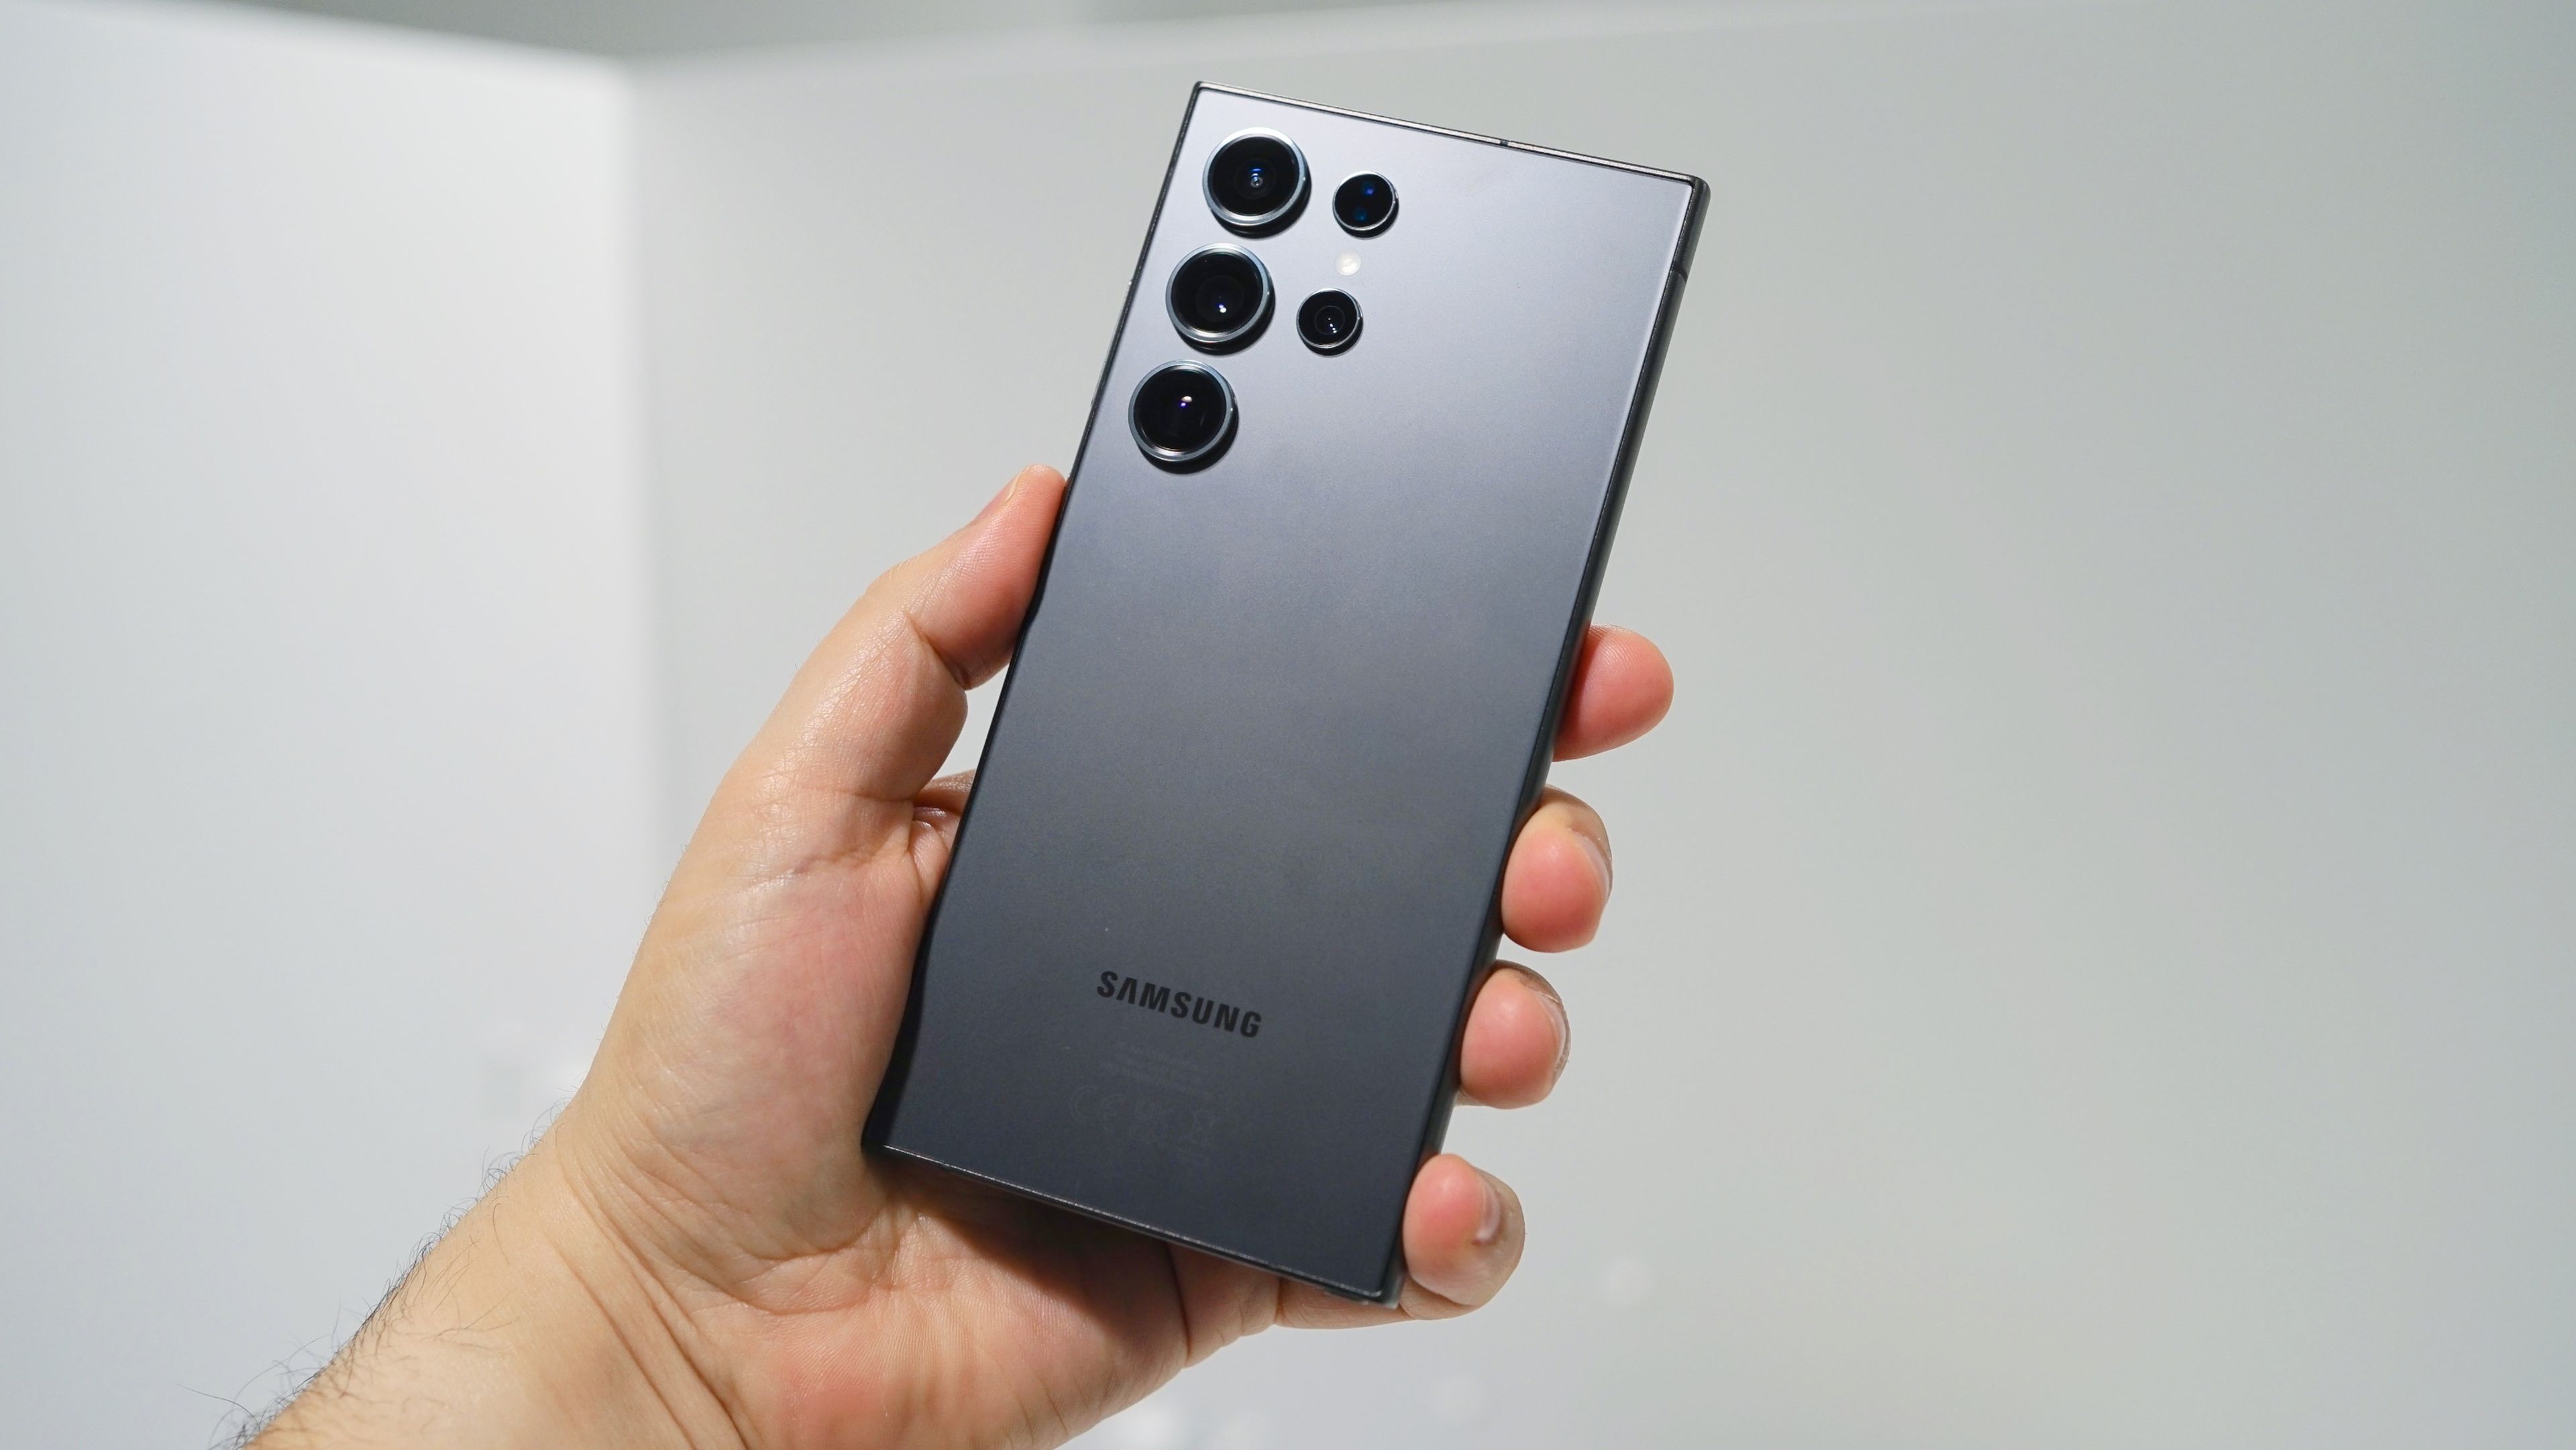 Samsung Galaxy S24, S24 Plus y S24 Ultra: primeras impresiones de